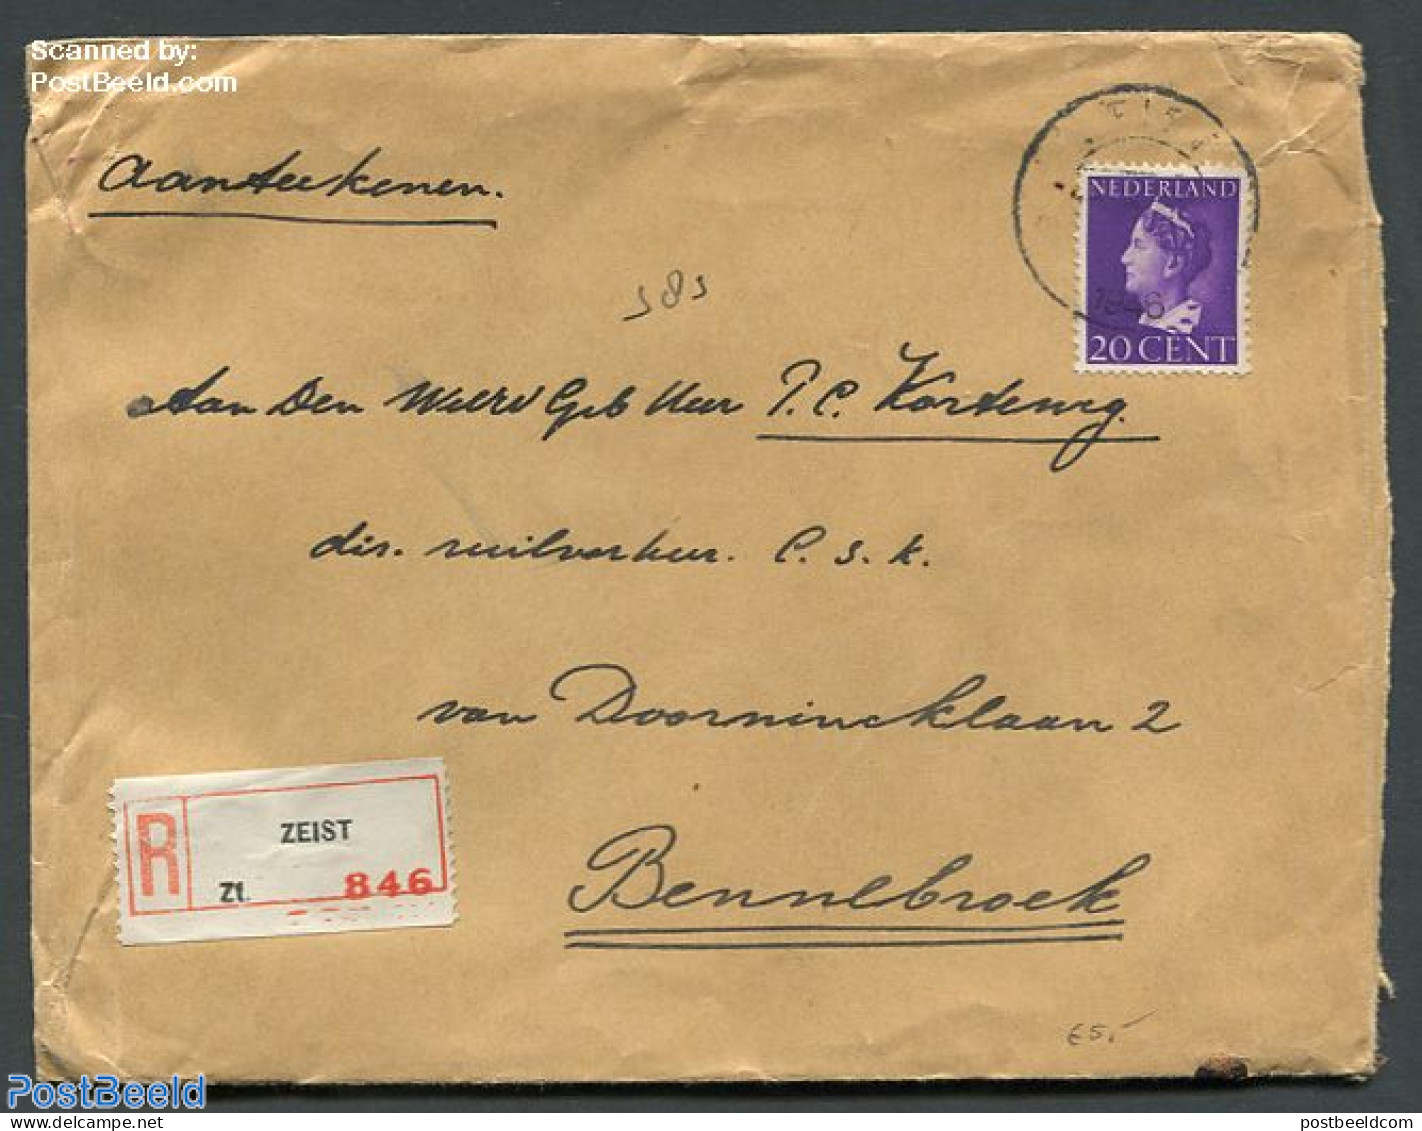 Netherlands 1940 Registered Cover From Zeist To Bennebroek, Postal History, History - Kings & Queens (Royalty) - Brieven En Documenten